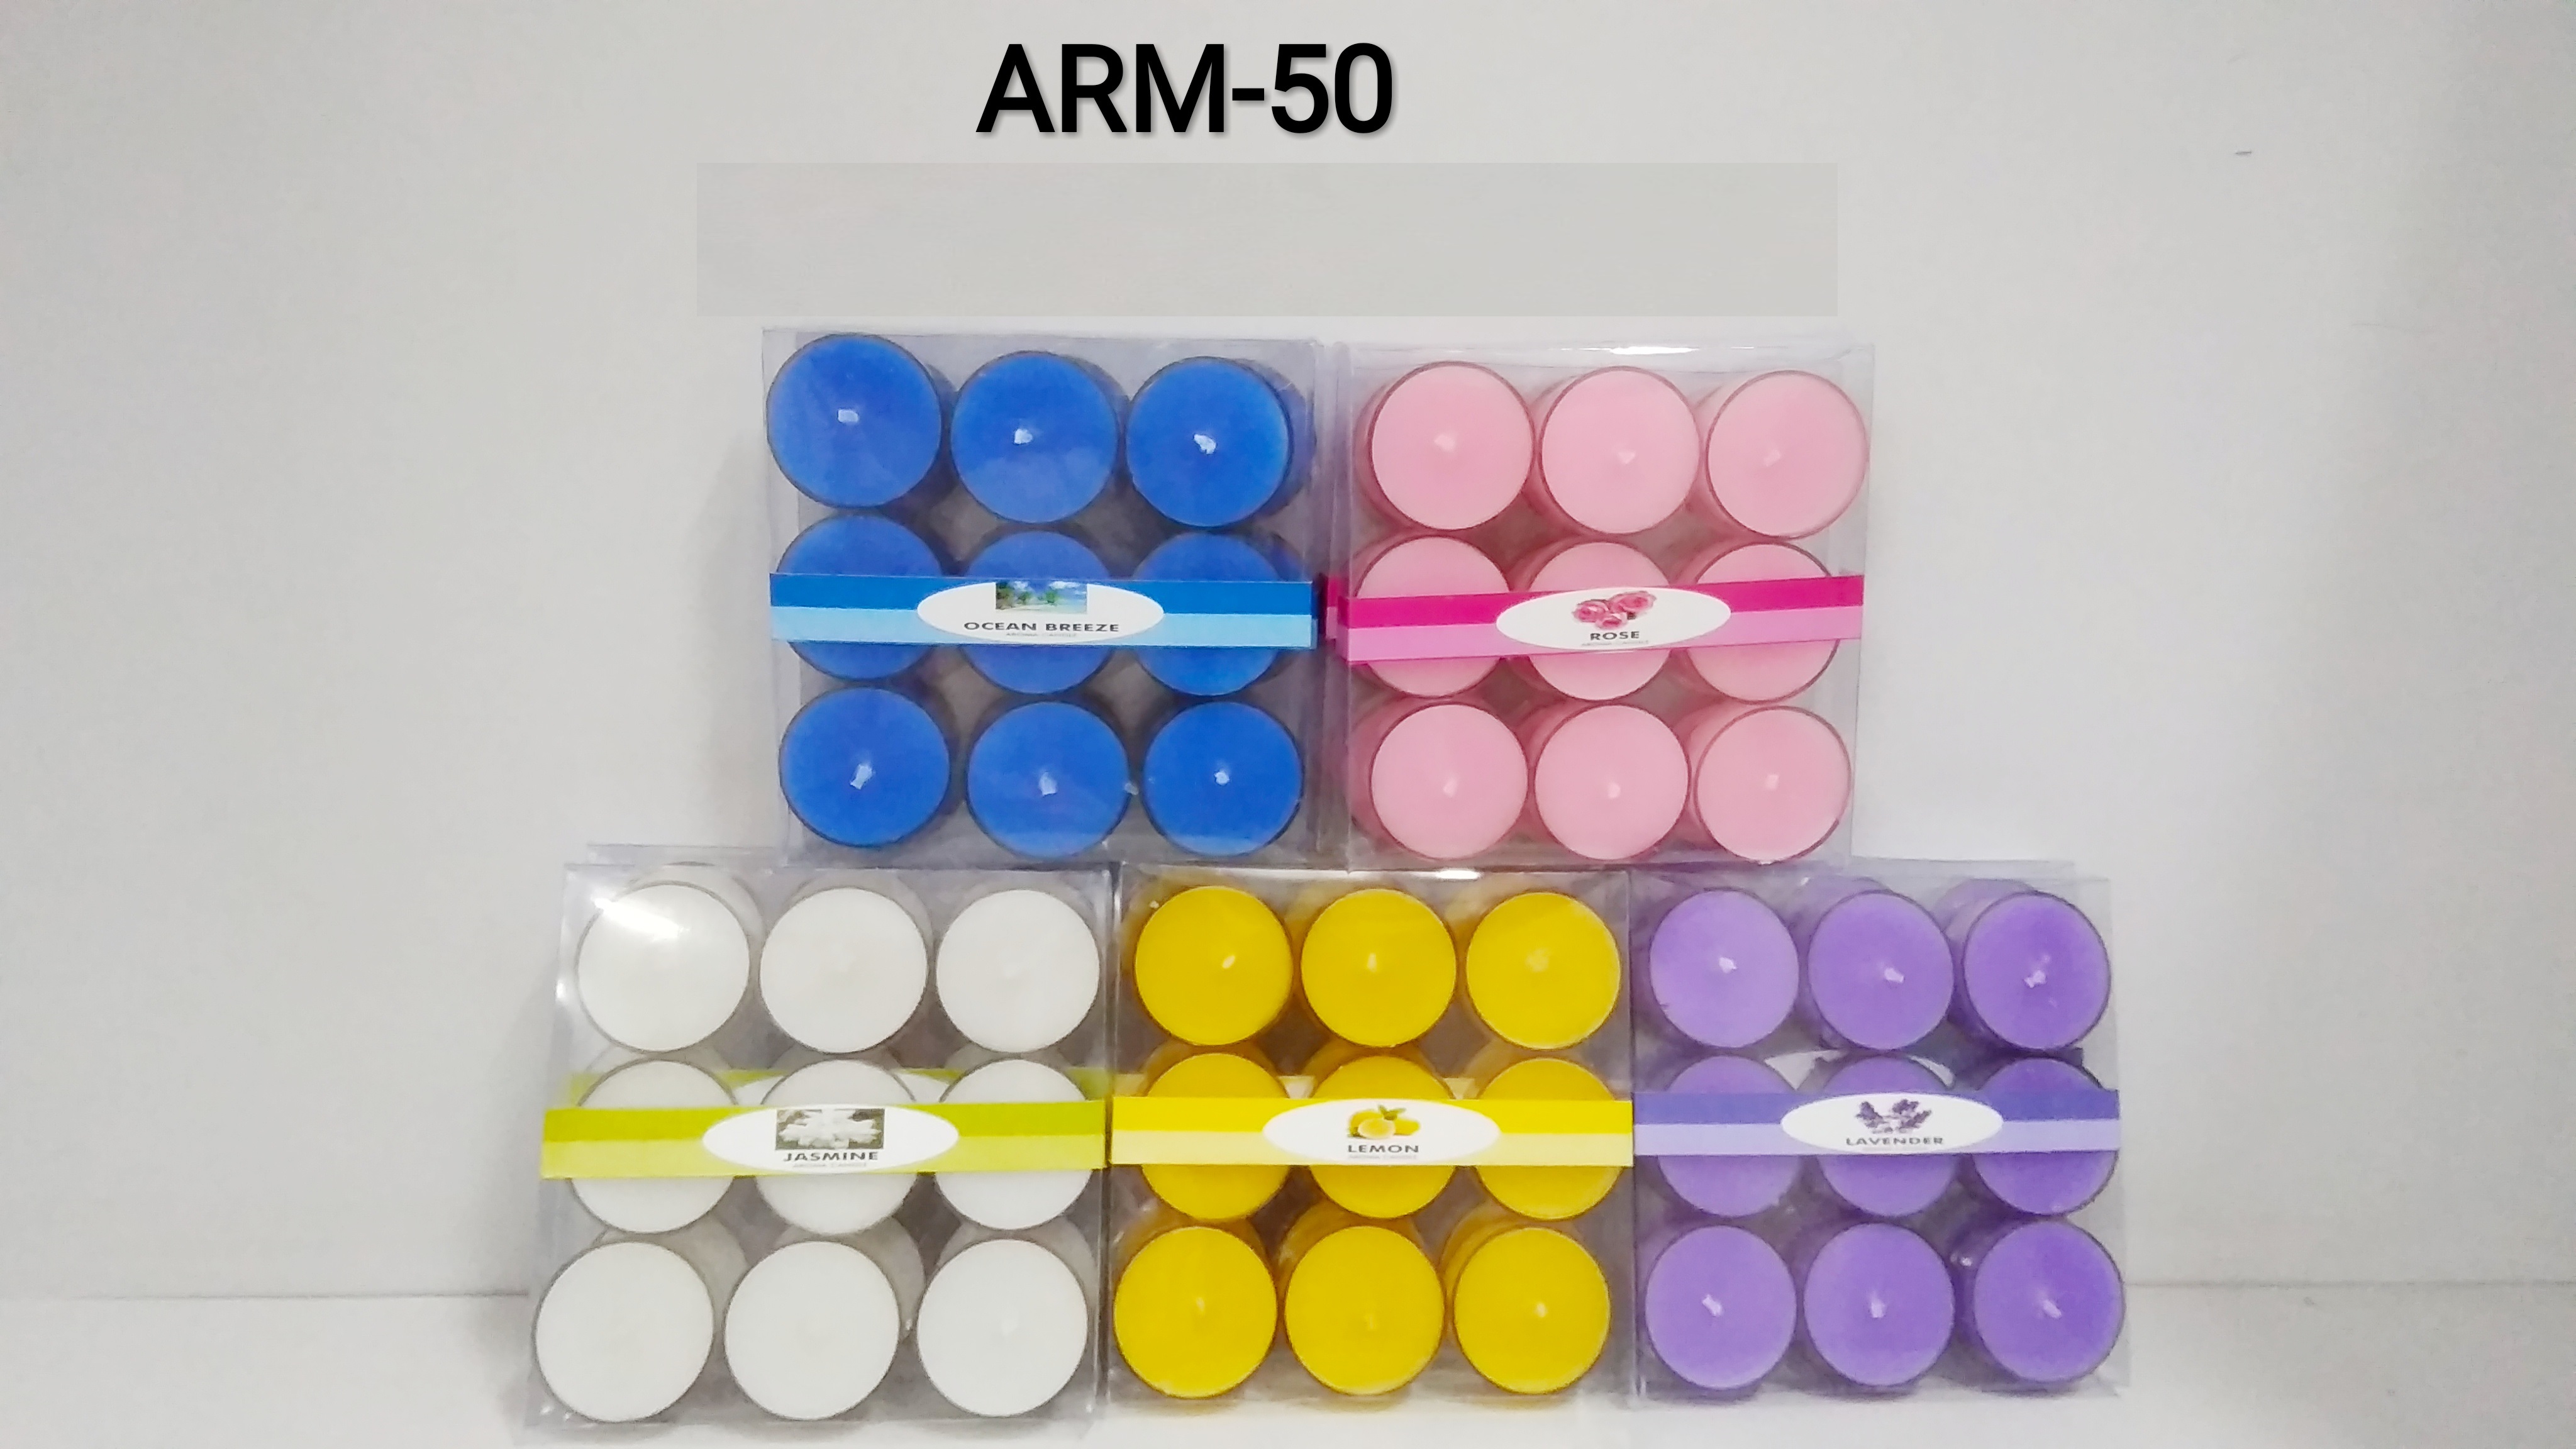 ARM-50